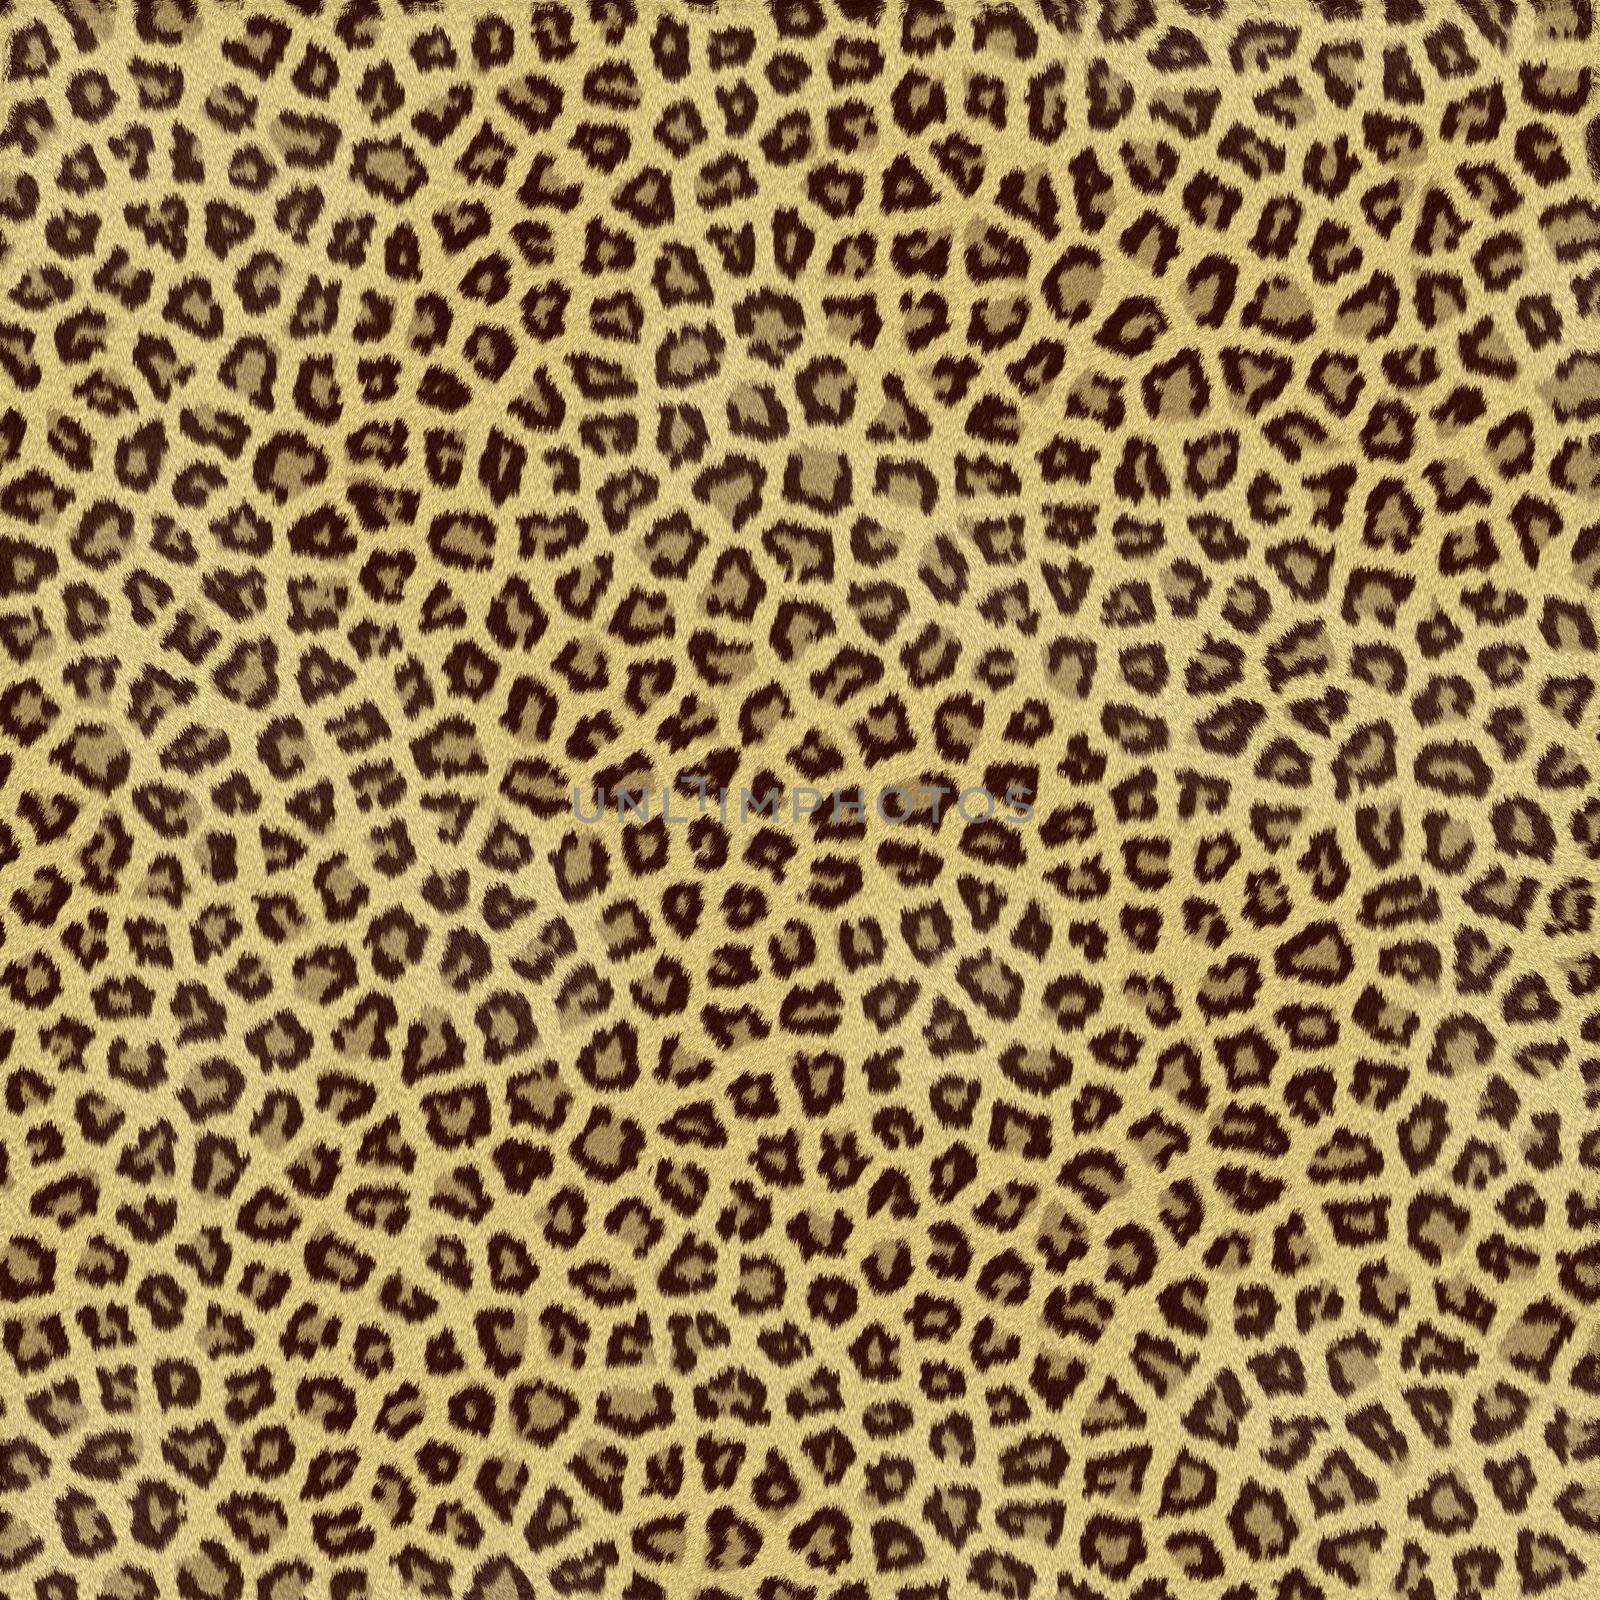 an large illustration of spotted leopard or jaguar skin or fur